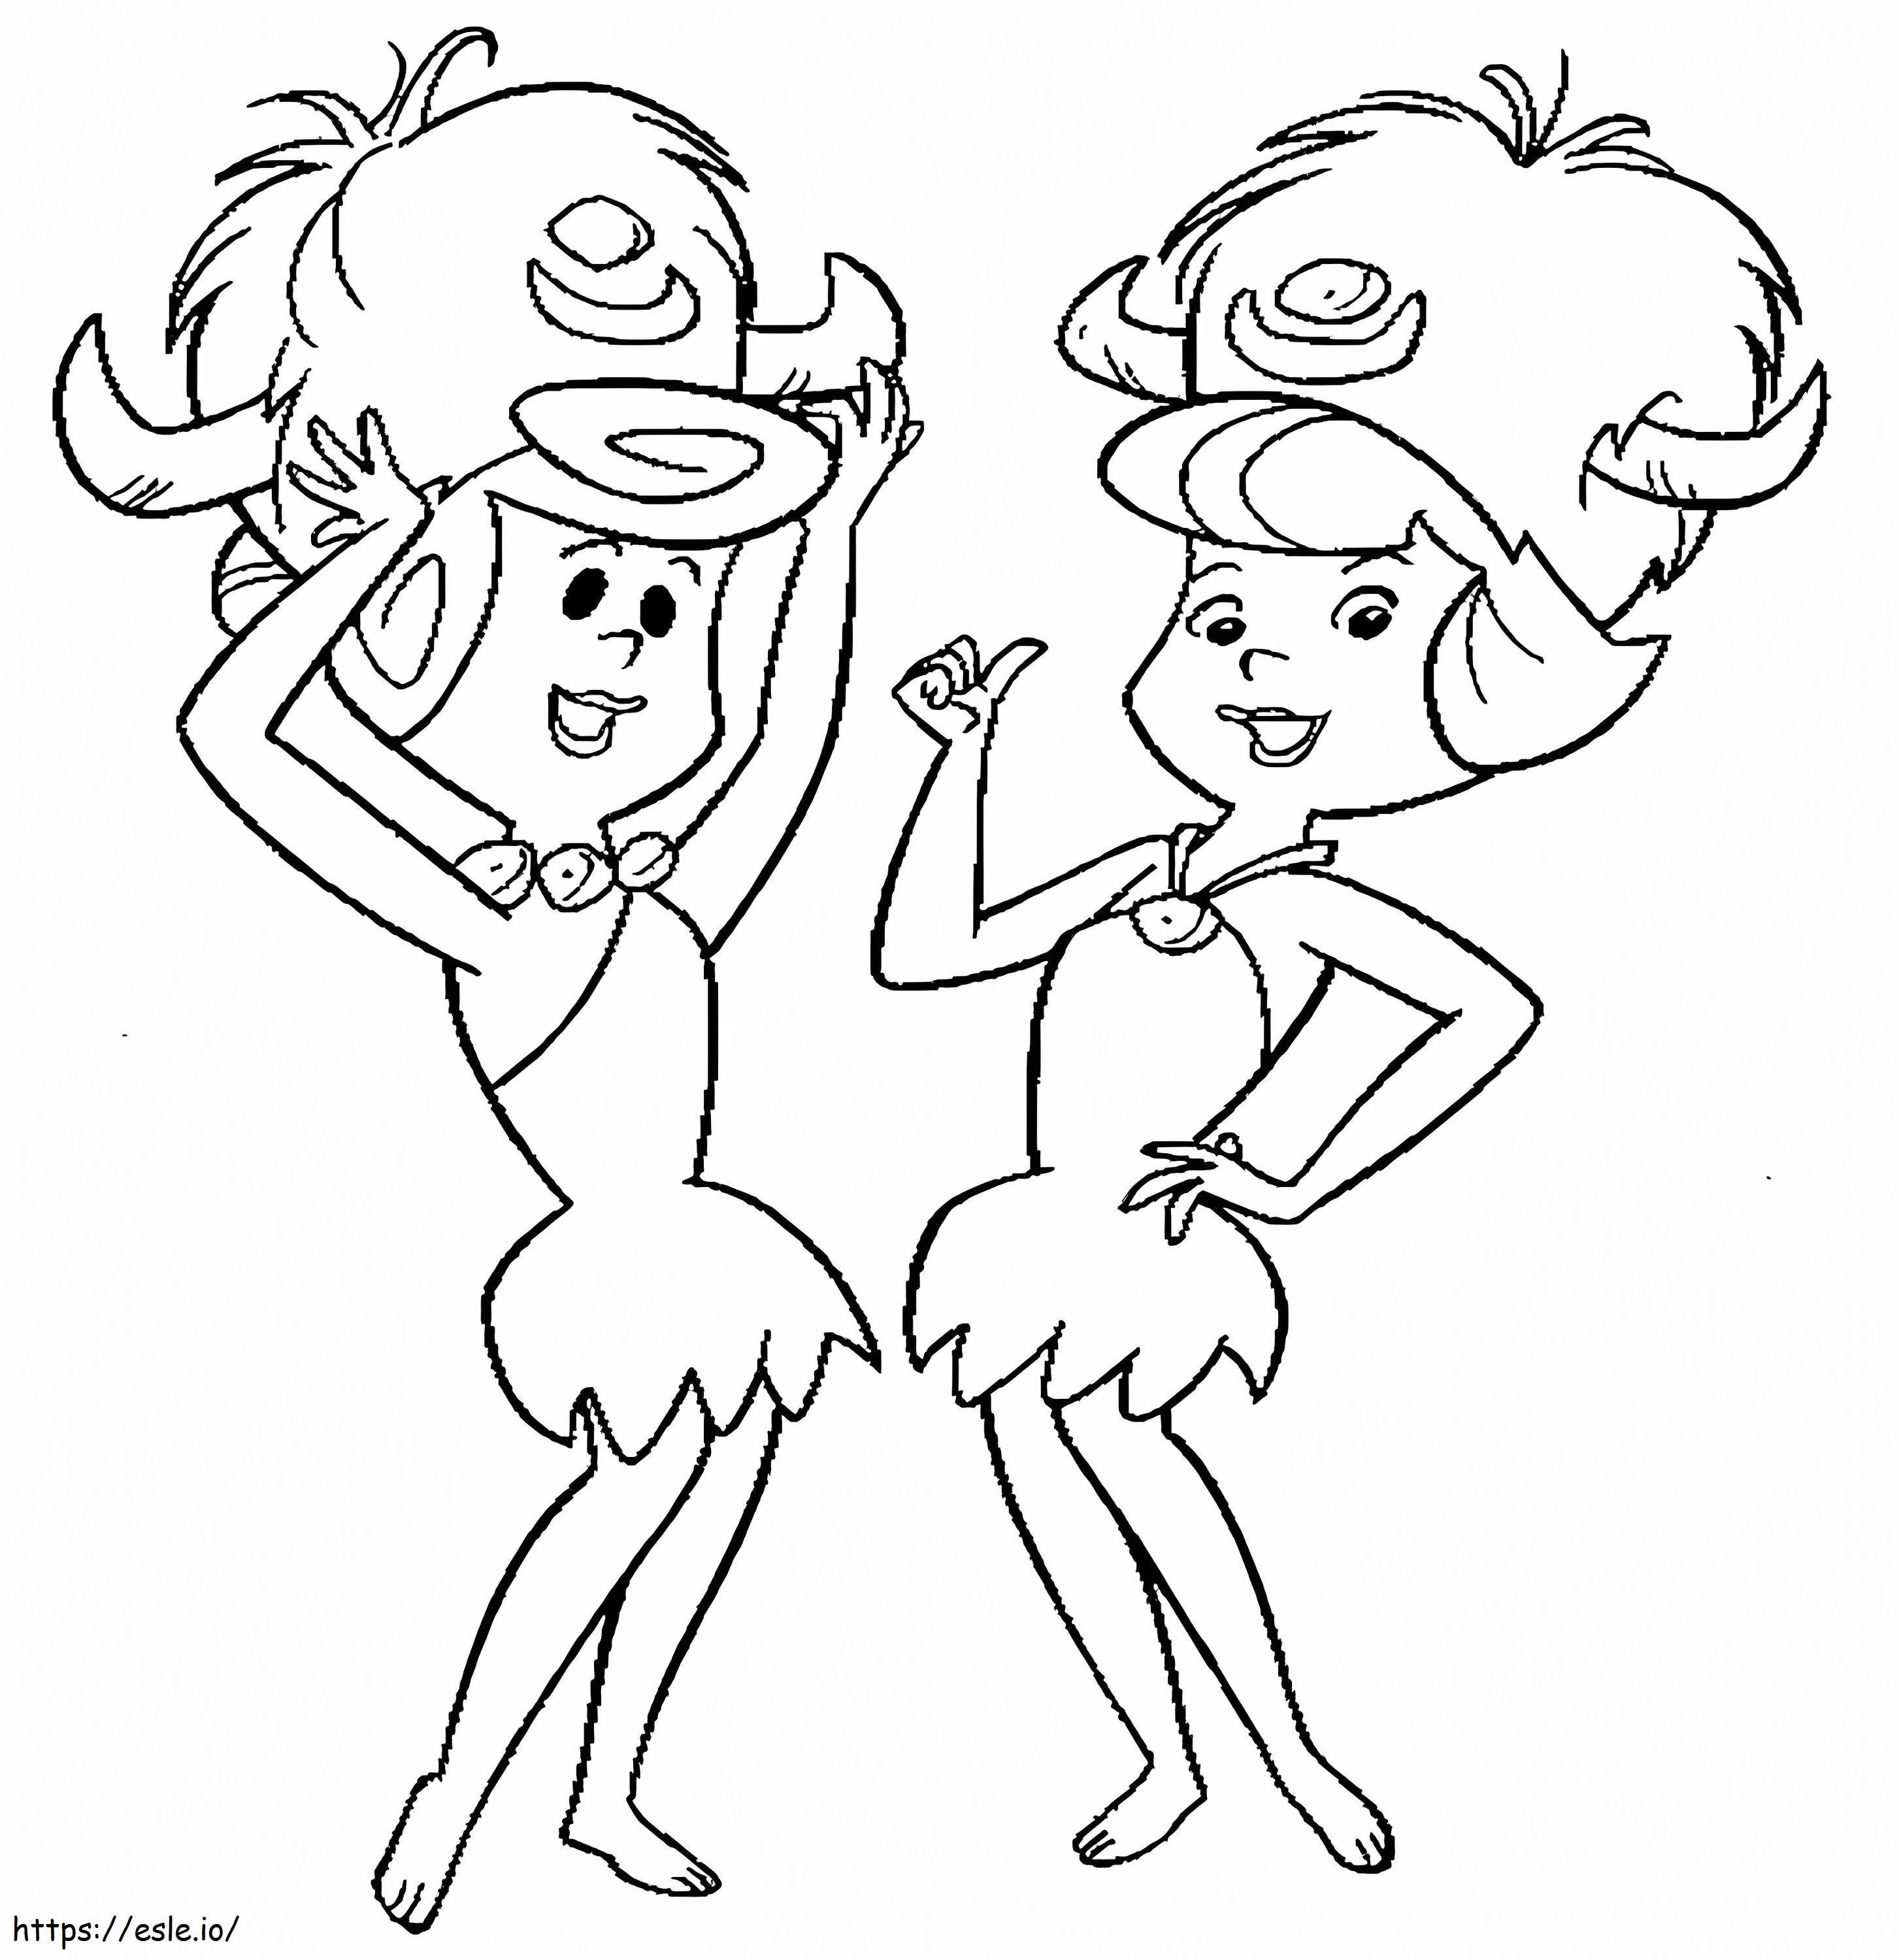 Wilma i Betty kolorowanka